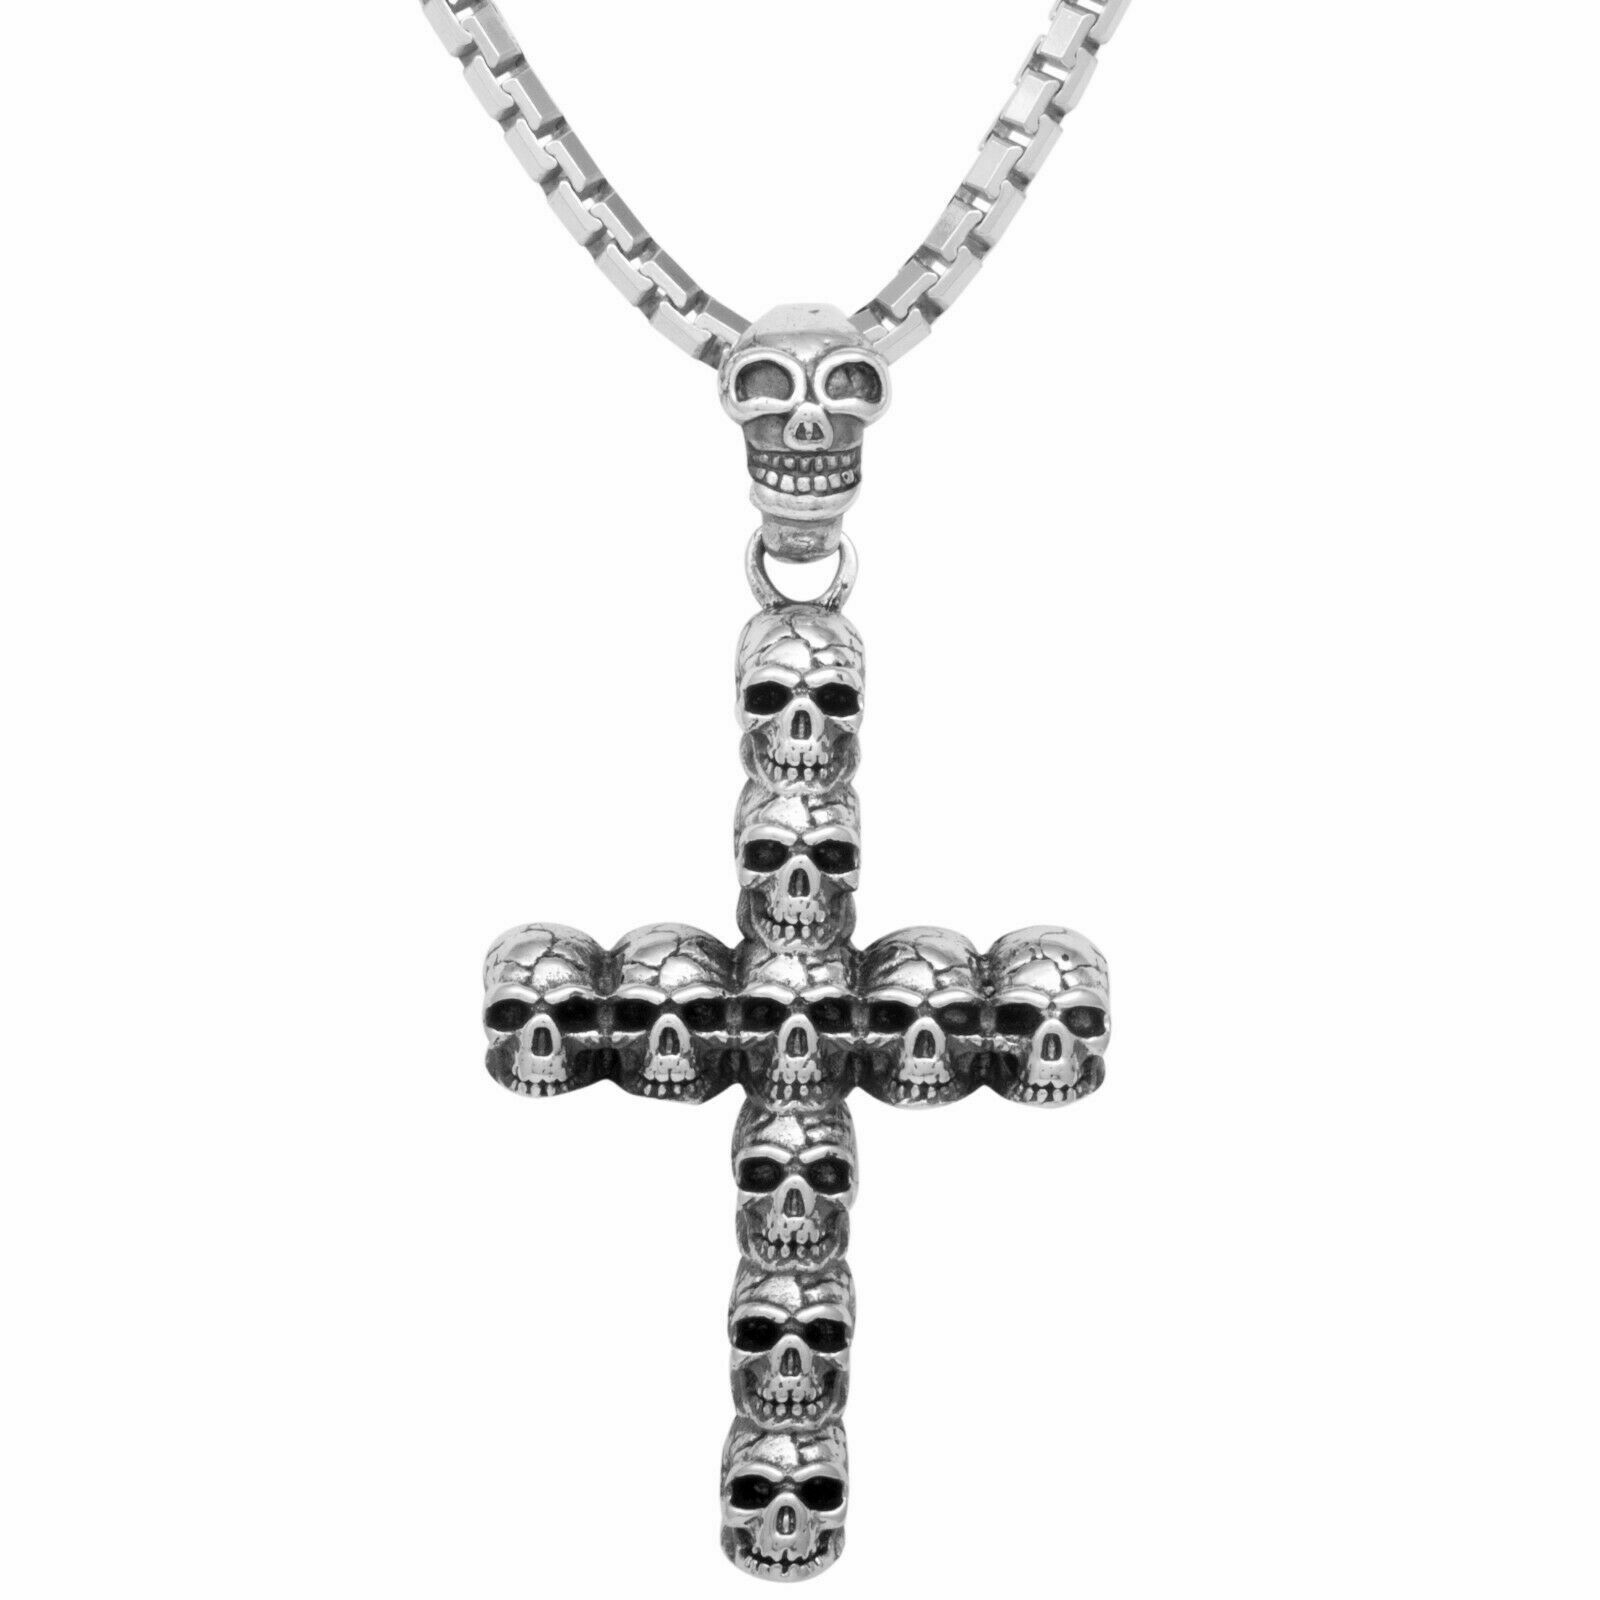 Silber Kette Gothic Kreuz 925 Anhänger Totenkopf Sterling